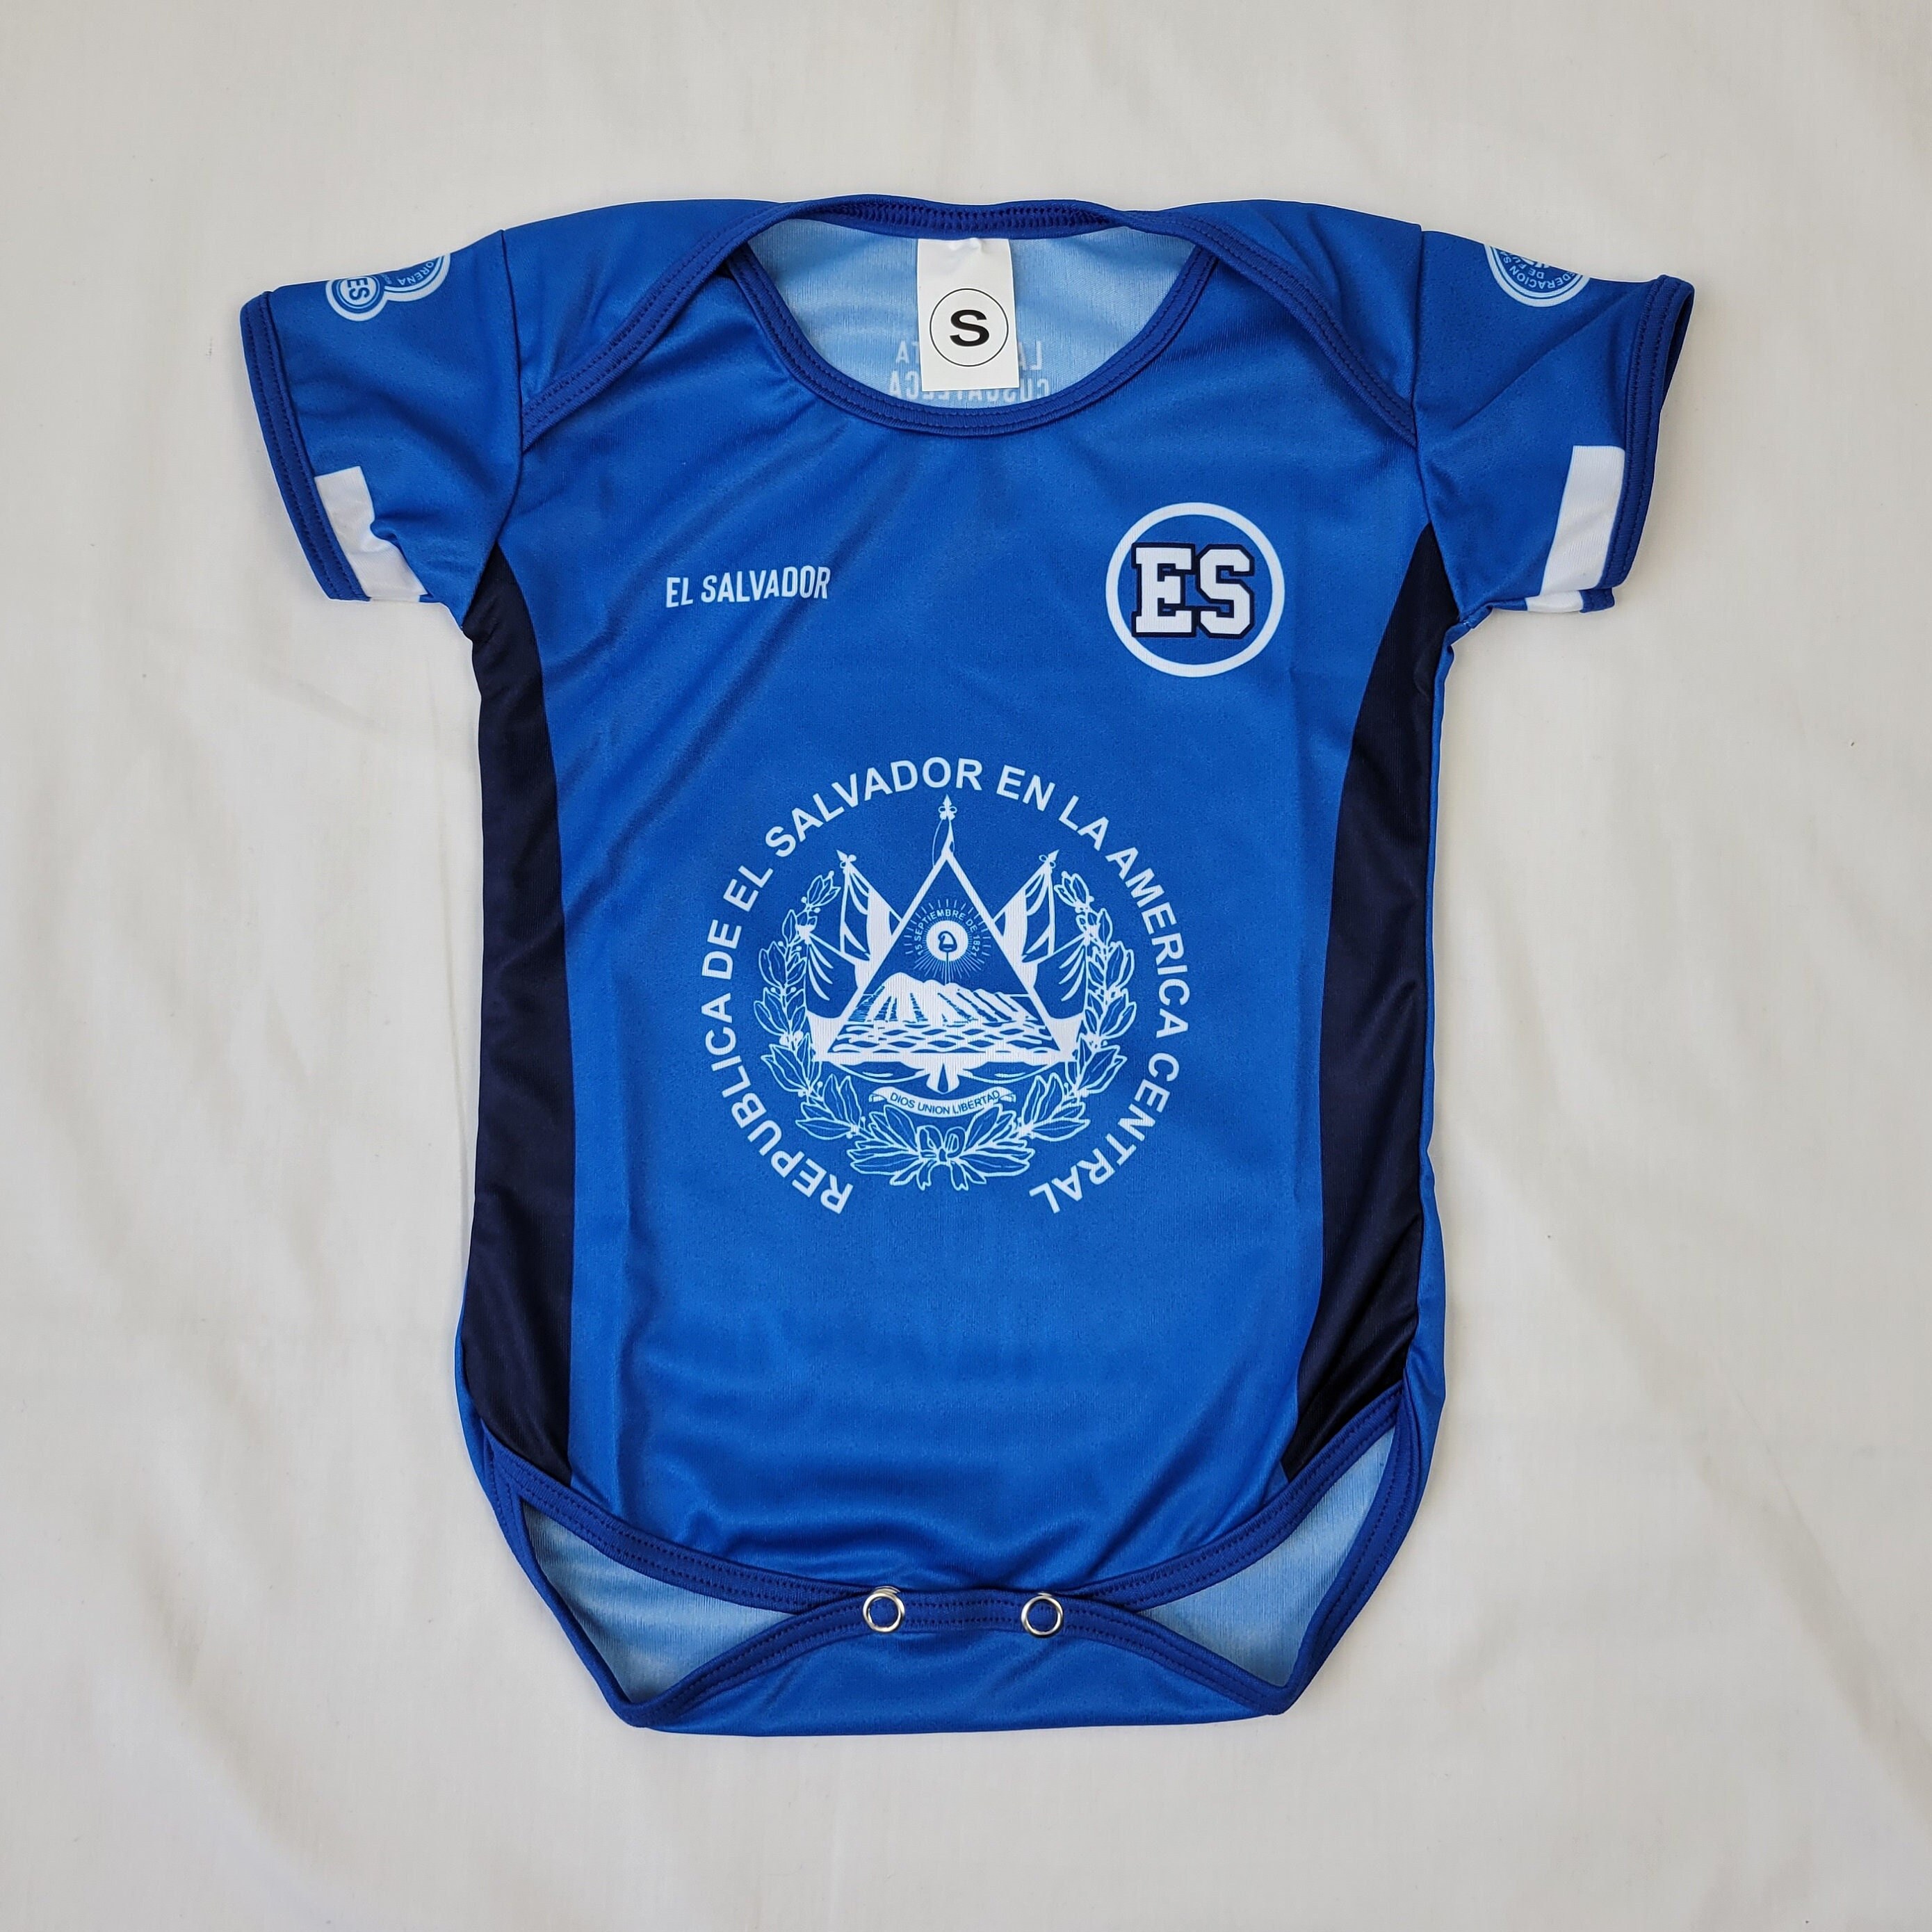 El Salvador Baby Jersey Soccer Jersey for Baby El Salvador - Etsy